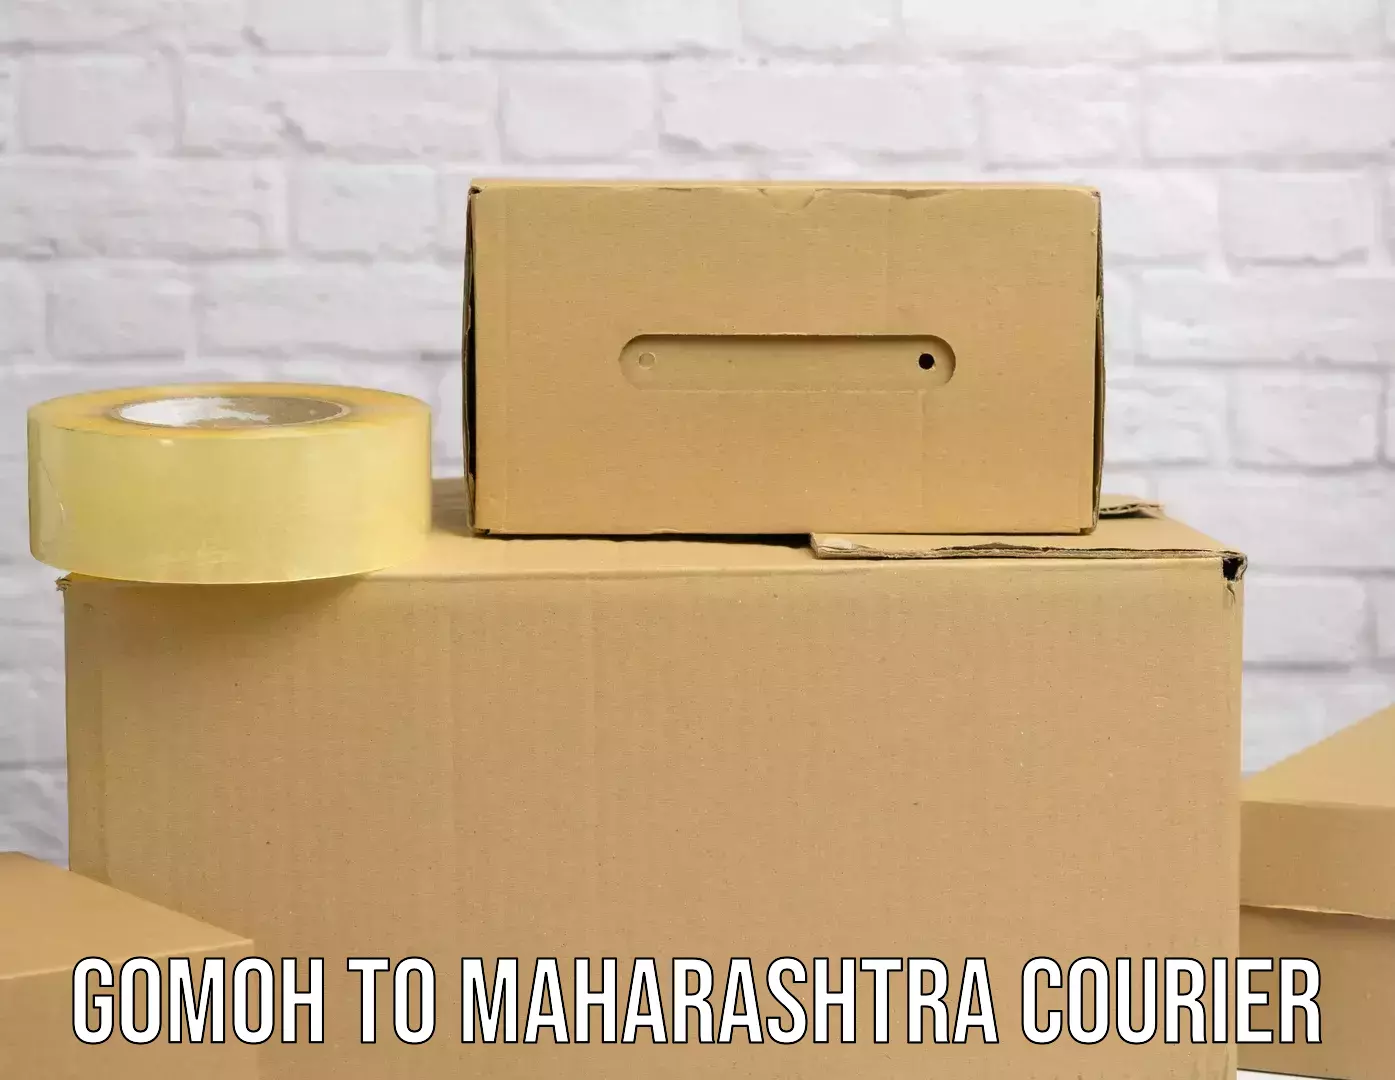 Courier service innovation Gomoh to Mumbai